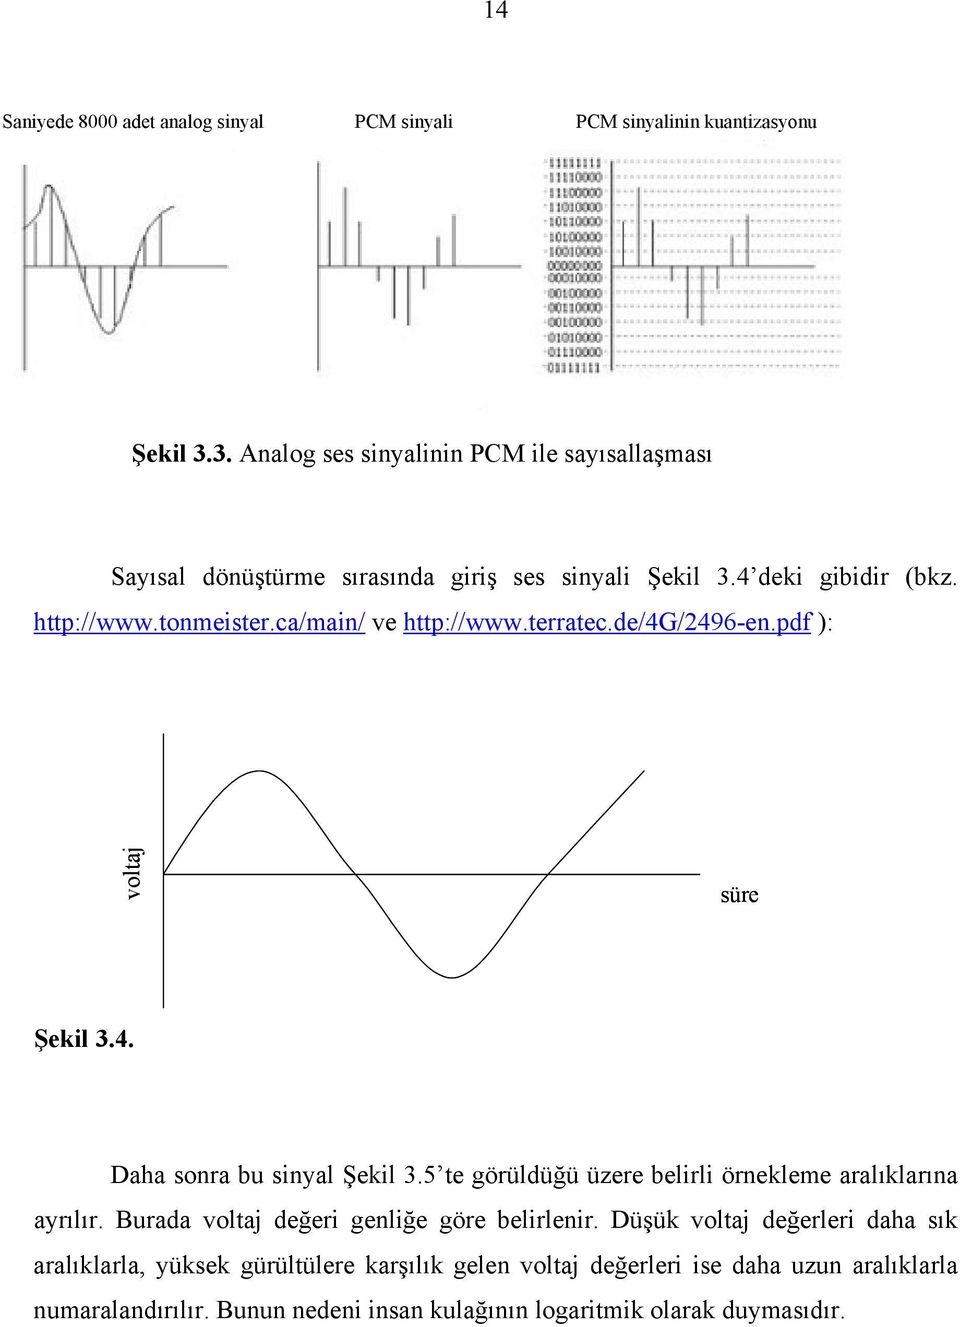 ca/main/ ve http://www.terratec.de/4g/2496-en.pdf ): voltaj süre Şekil 3.4. Daha sonra bu sinyal Şekil 3.